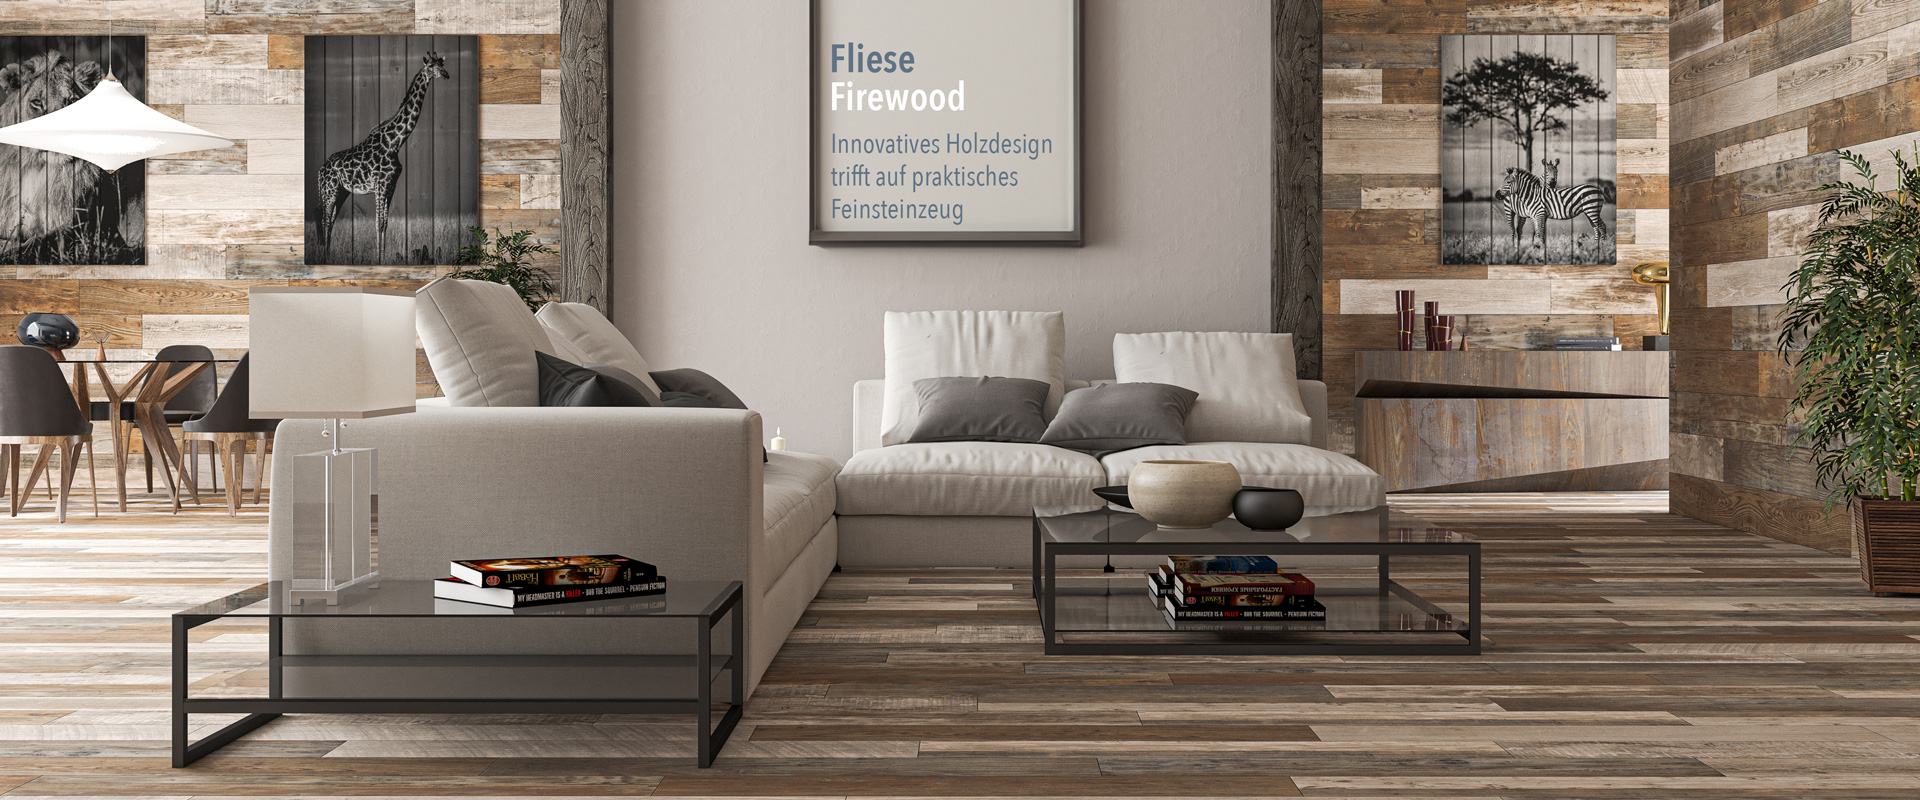 Wohnzimmer mit innovativem Holzdesign der Fliese Firewood mit zwei hellen Zweisitzern, zwei Glastischen, weiteren Sitzgelegenheiten & Bildern von Tieren in schwarz weiß an der Wand